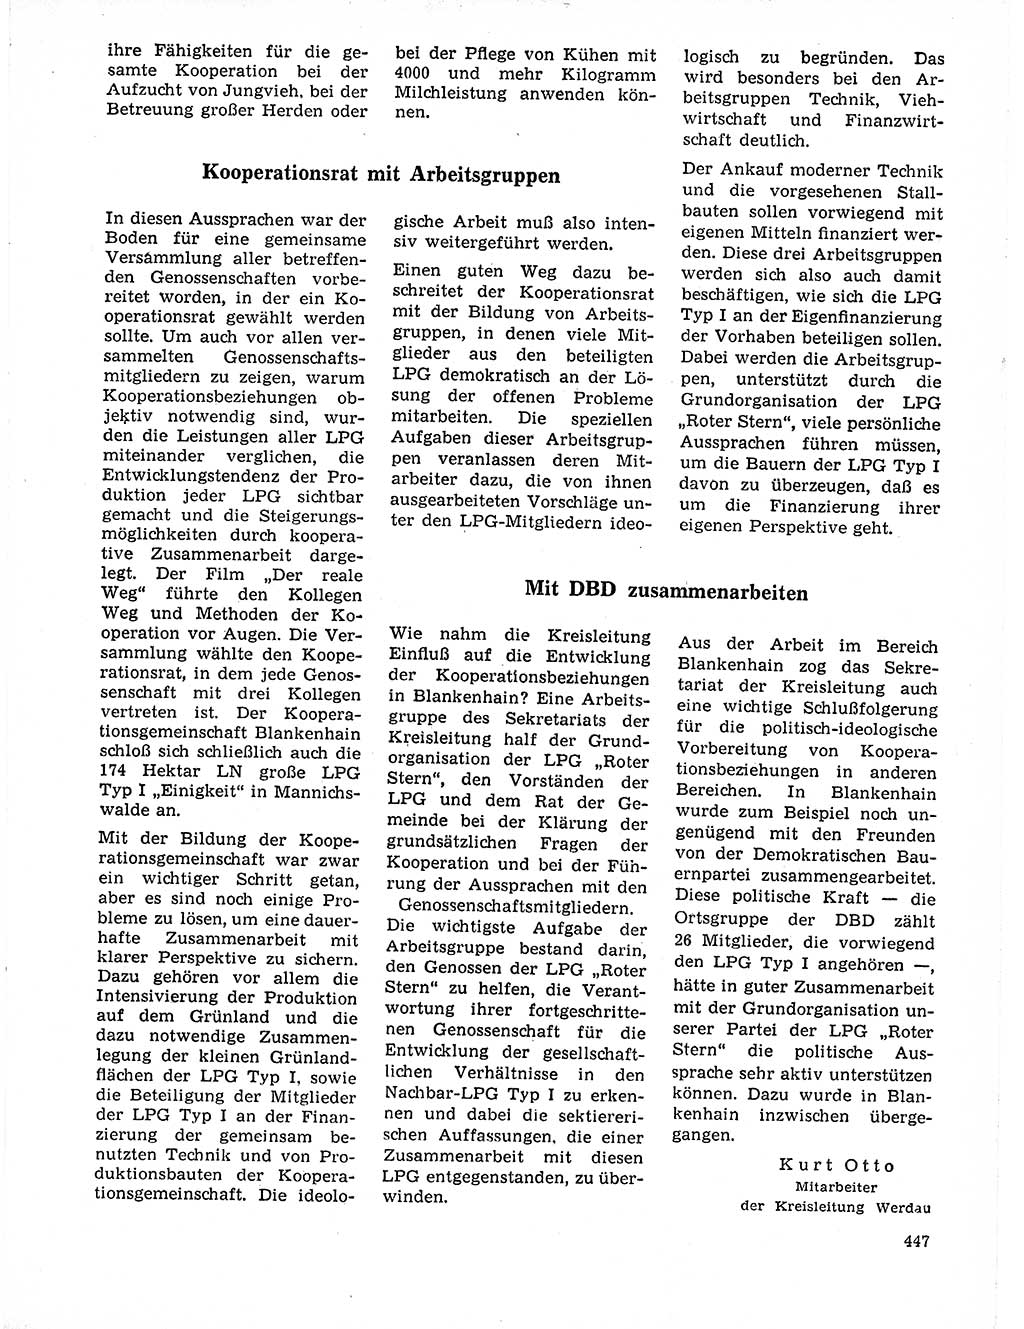 Neuer Weg (NW), Organ des Zentralkomitees (ZK) der SED (Sozialistische Einheitspartei Deutschlands) für Fragen des Parteilebens, 21. Jahrgang [Deutsche Demokratische Republik (DDR)] 1966, Seite 447 (NW ZK SED DDR 1966, S. 447)